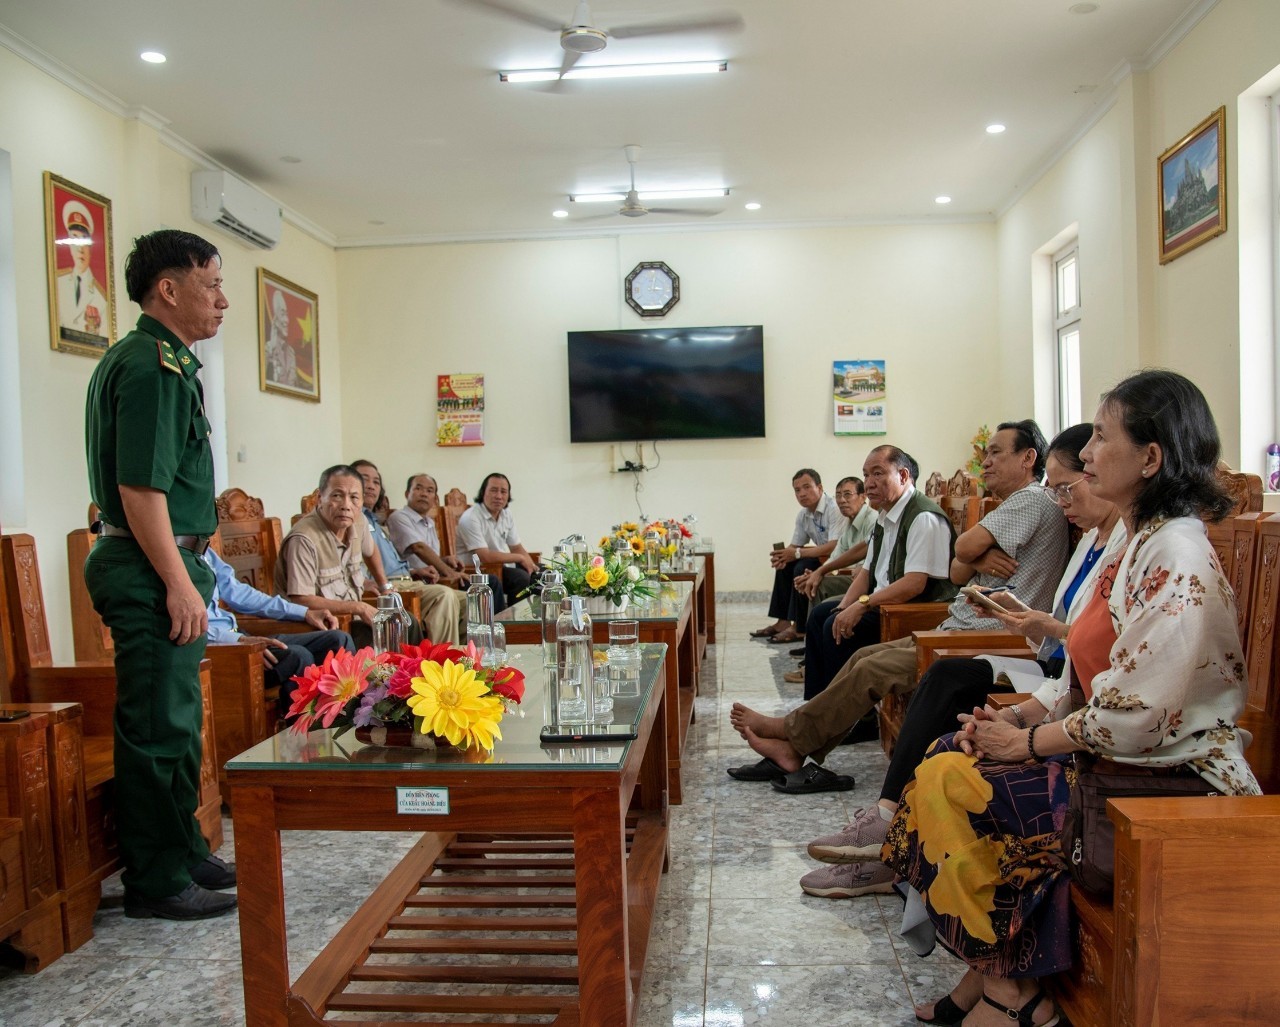 Thiếu tá Đỗ Ngọc Tuấn, Đồn phó nghiệp vụ Đồn biên phòng Cửa khẩu Hoàng Diệu cho biết tình hình chung trên địa bàn đơn vị quản lý với Đoàn văn nghệ sĩ tỉnh Bình Phước.